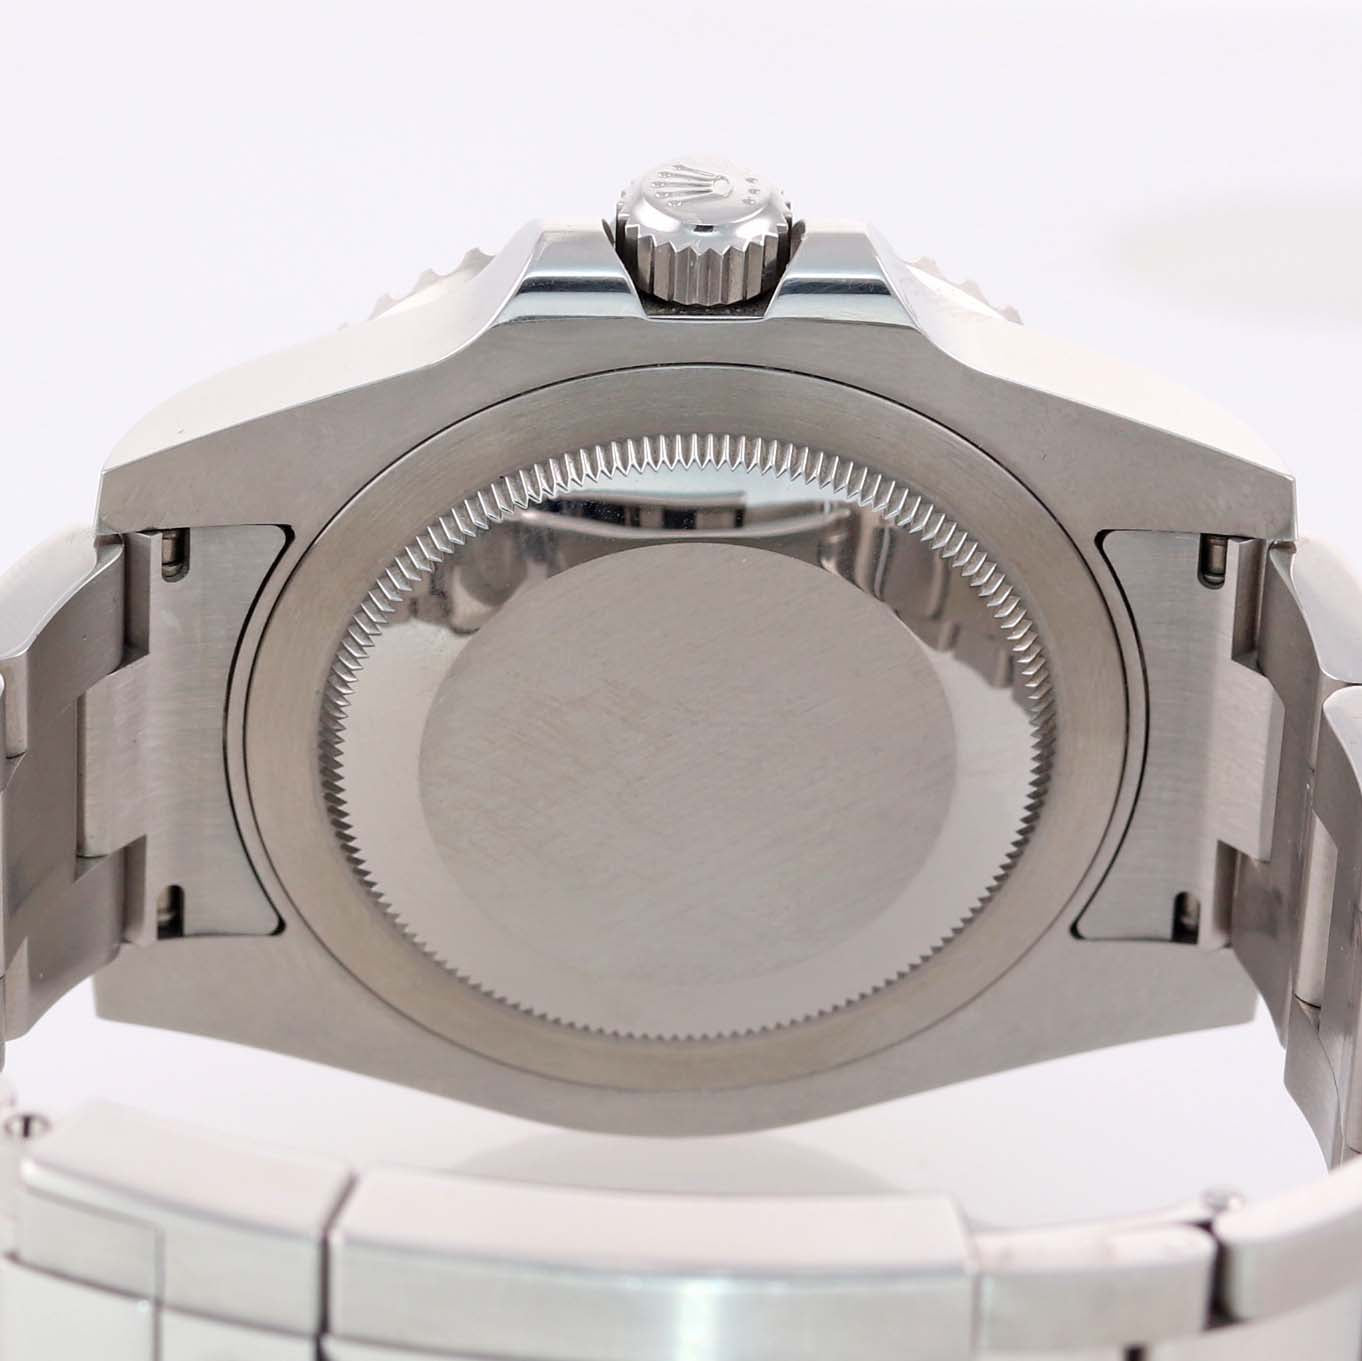 2014 PAPERS Rolex GMT Master Blue 116710 BLNR Ceramic Bezel Batman Watch Box